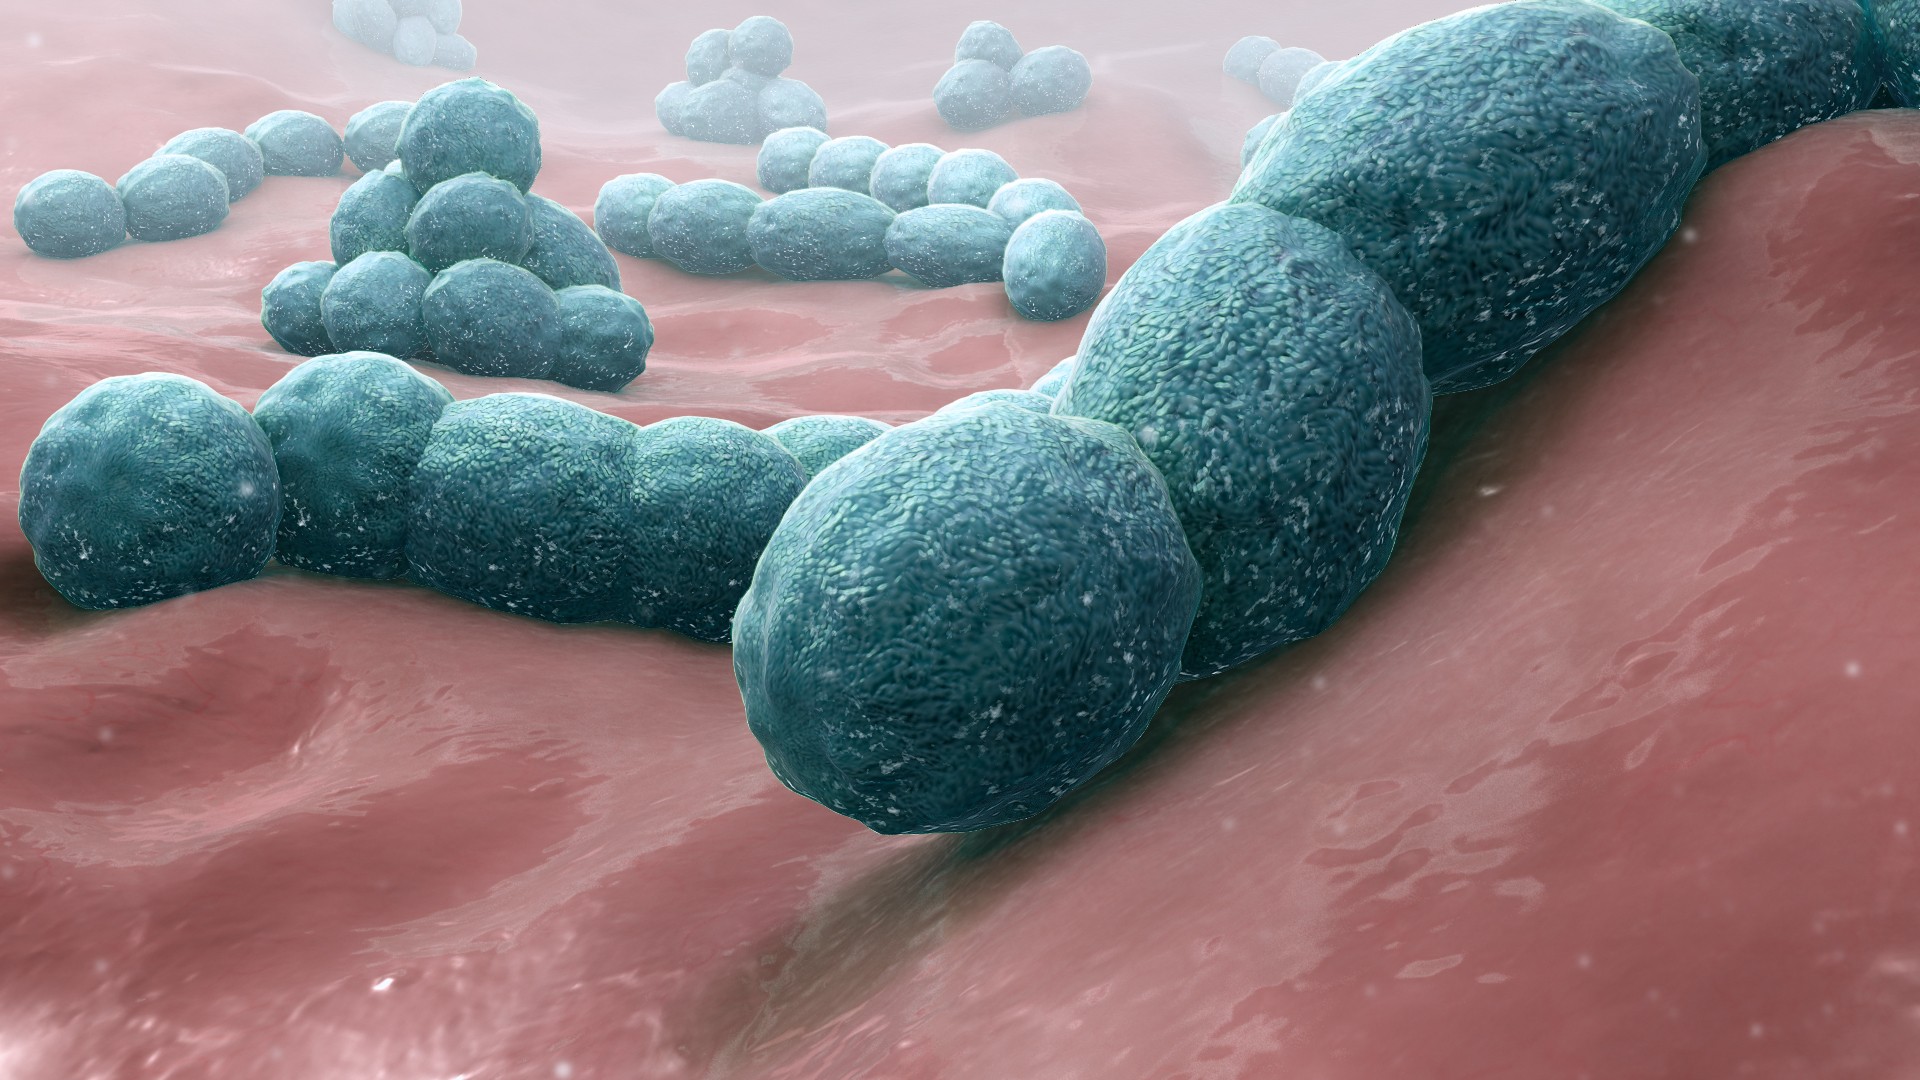 A bactéria causadora de meningite Streptococcus pneumoniae  (Foto: Wikimedia Commons )